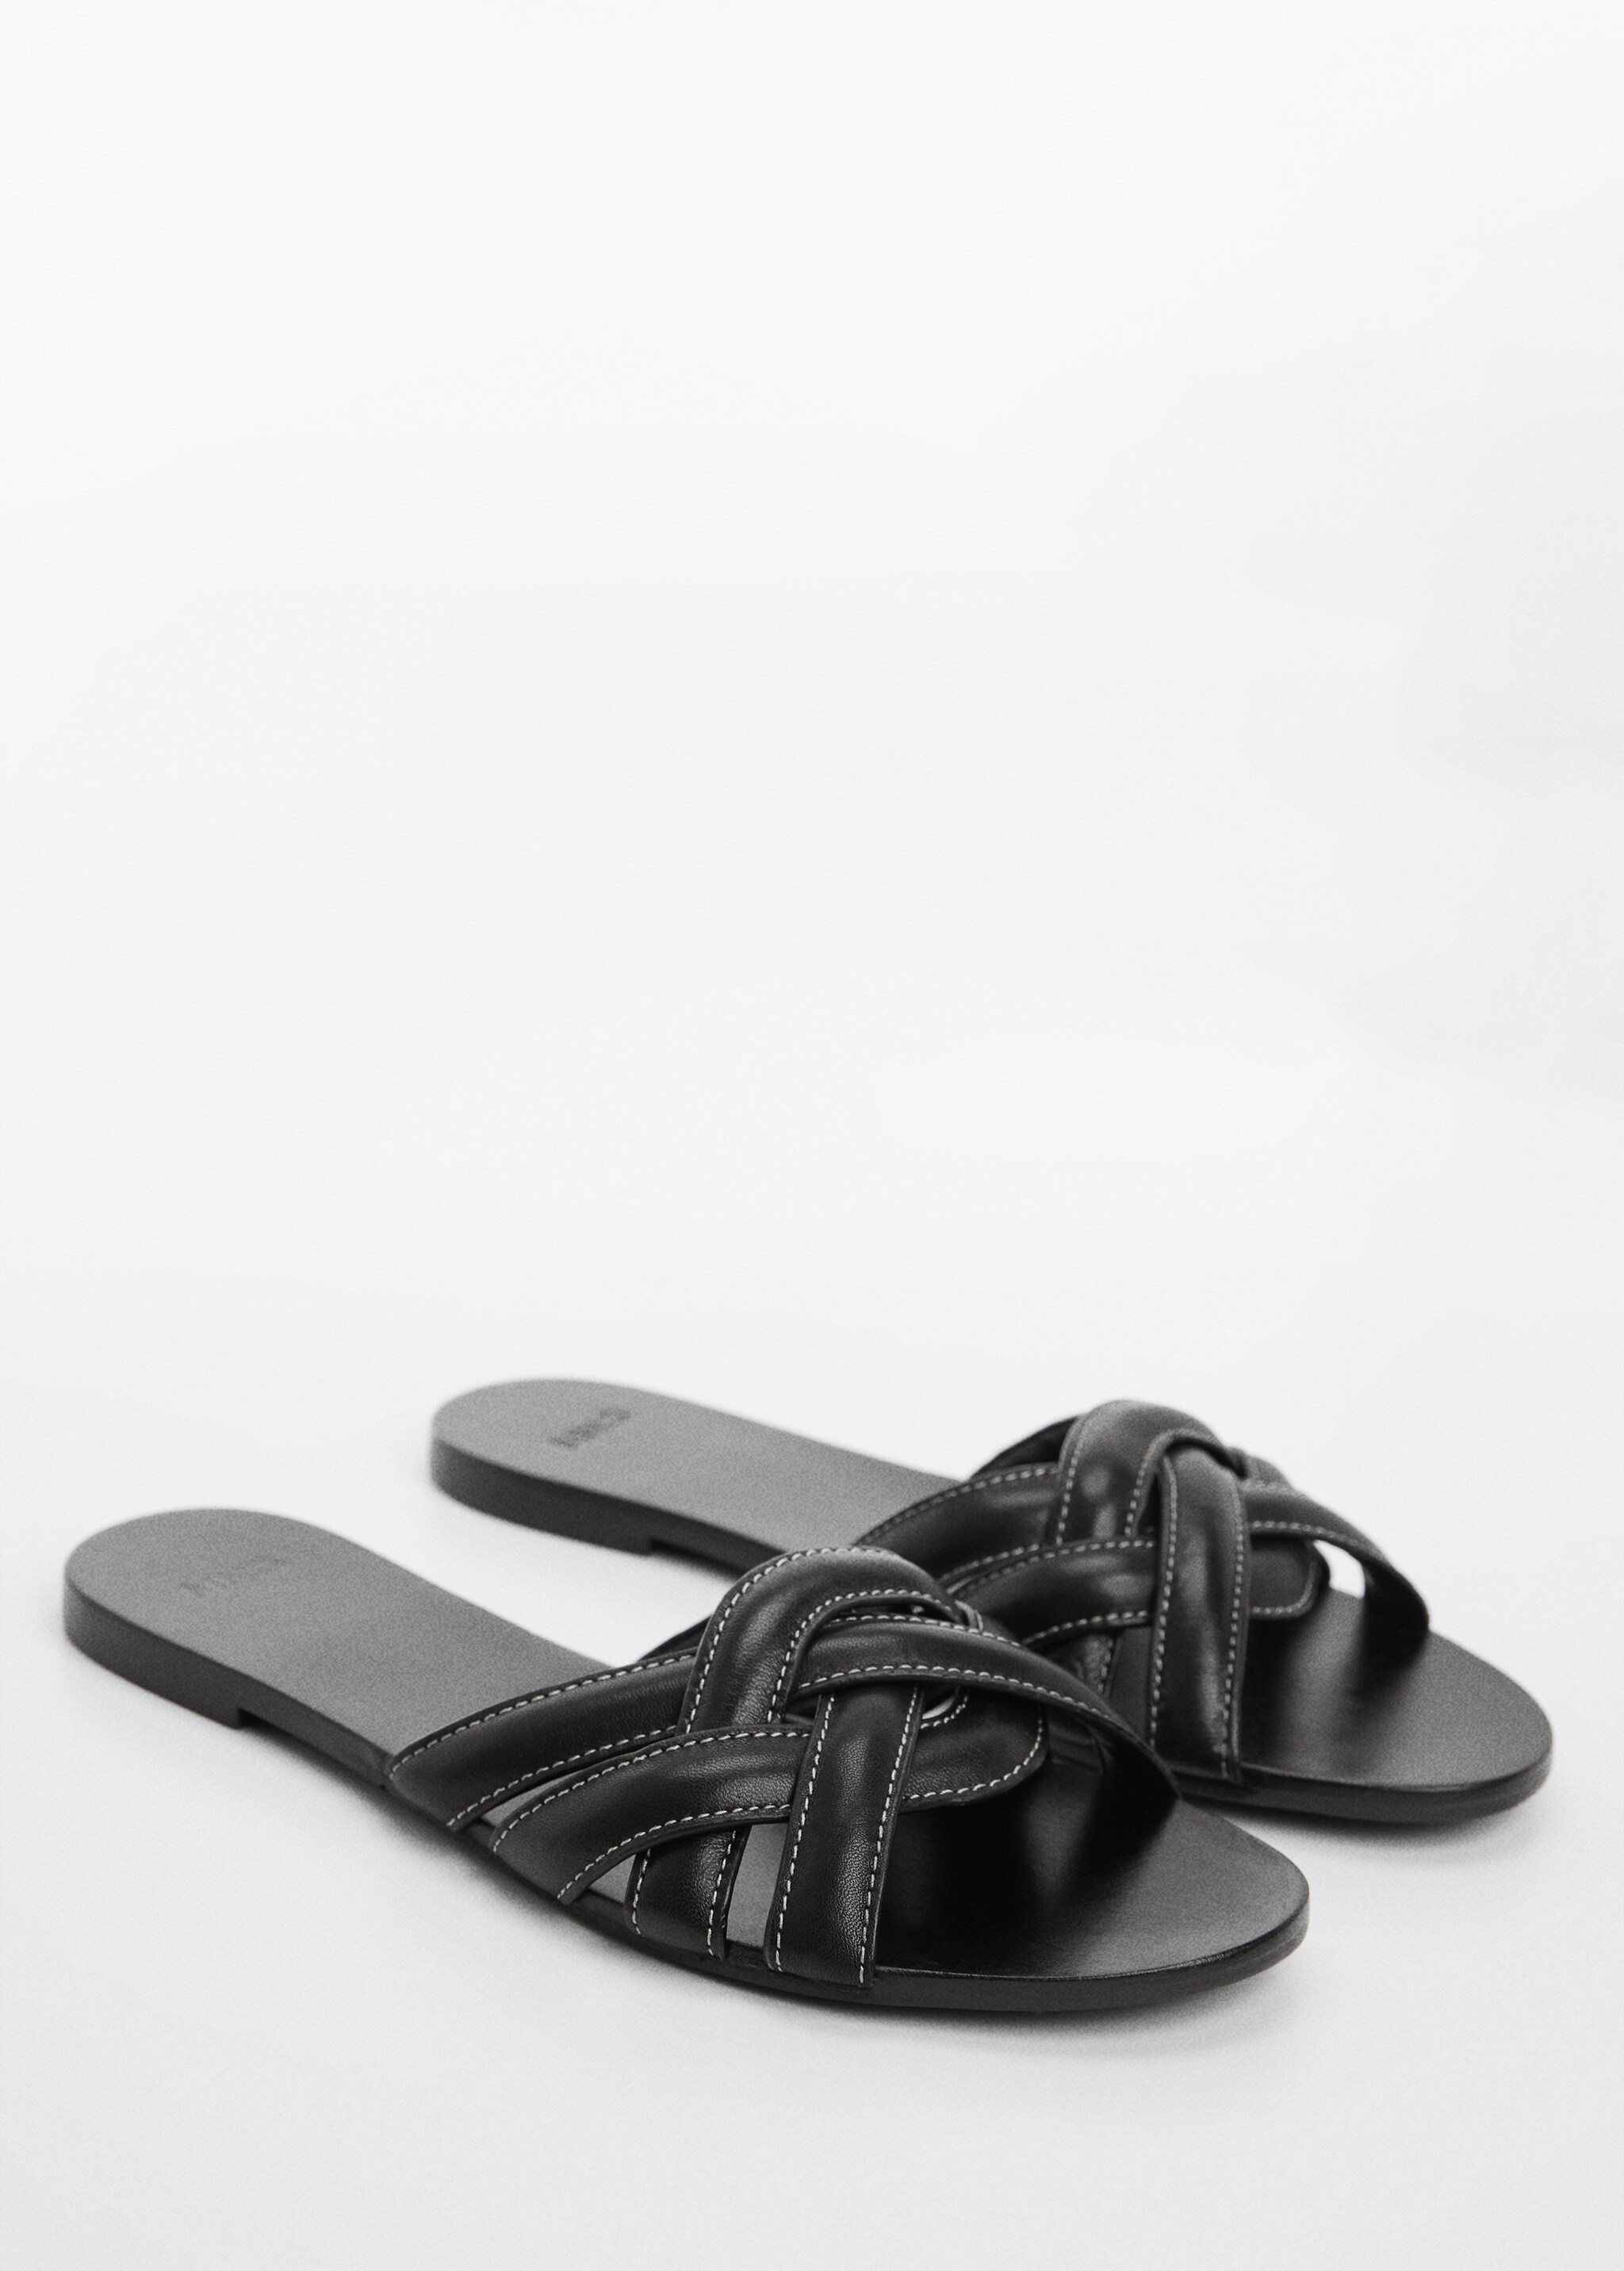 Leather straps sandals - Medium plane